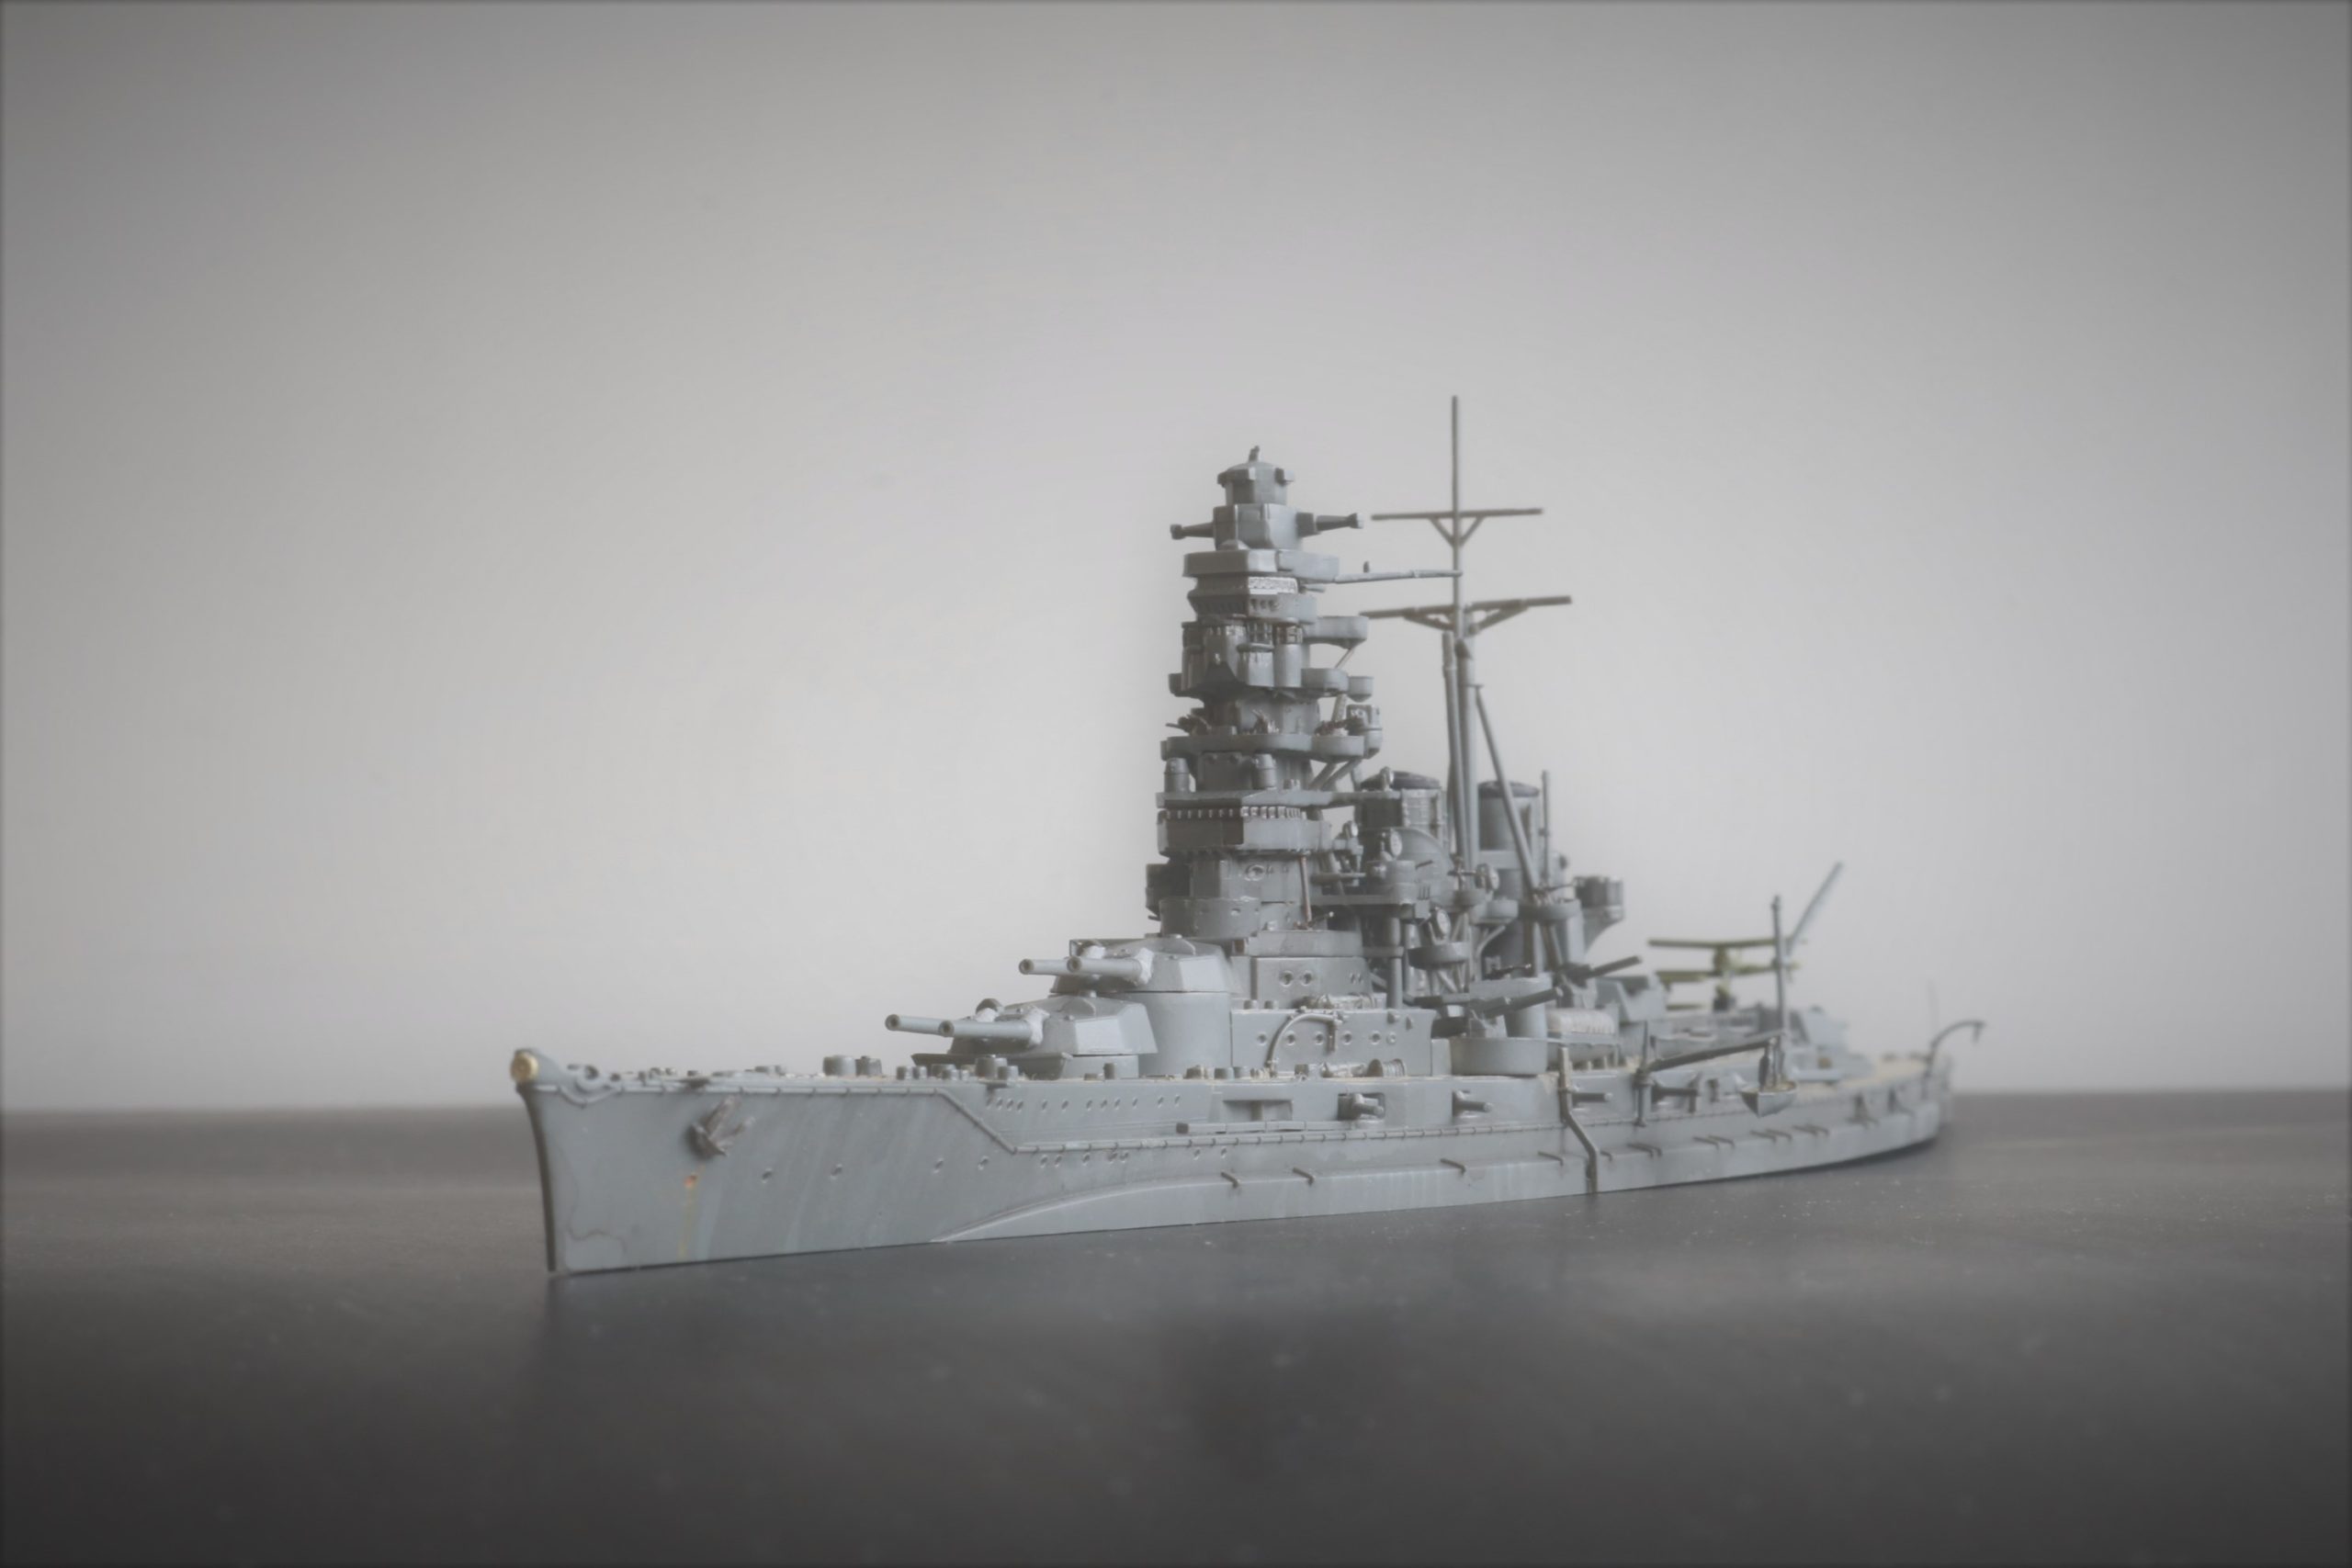 艦艇模型情景写真ギャラリー 戦艦 比叡 Battleship Hiei 1/700 フジミ模型 Fujimi